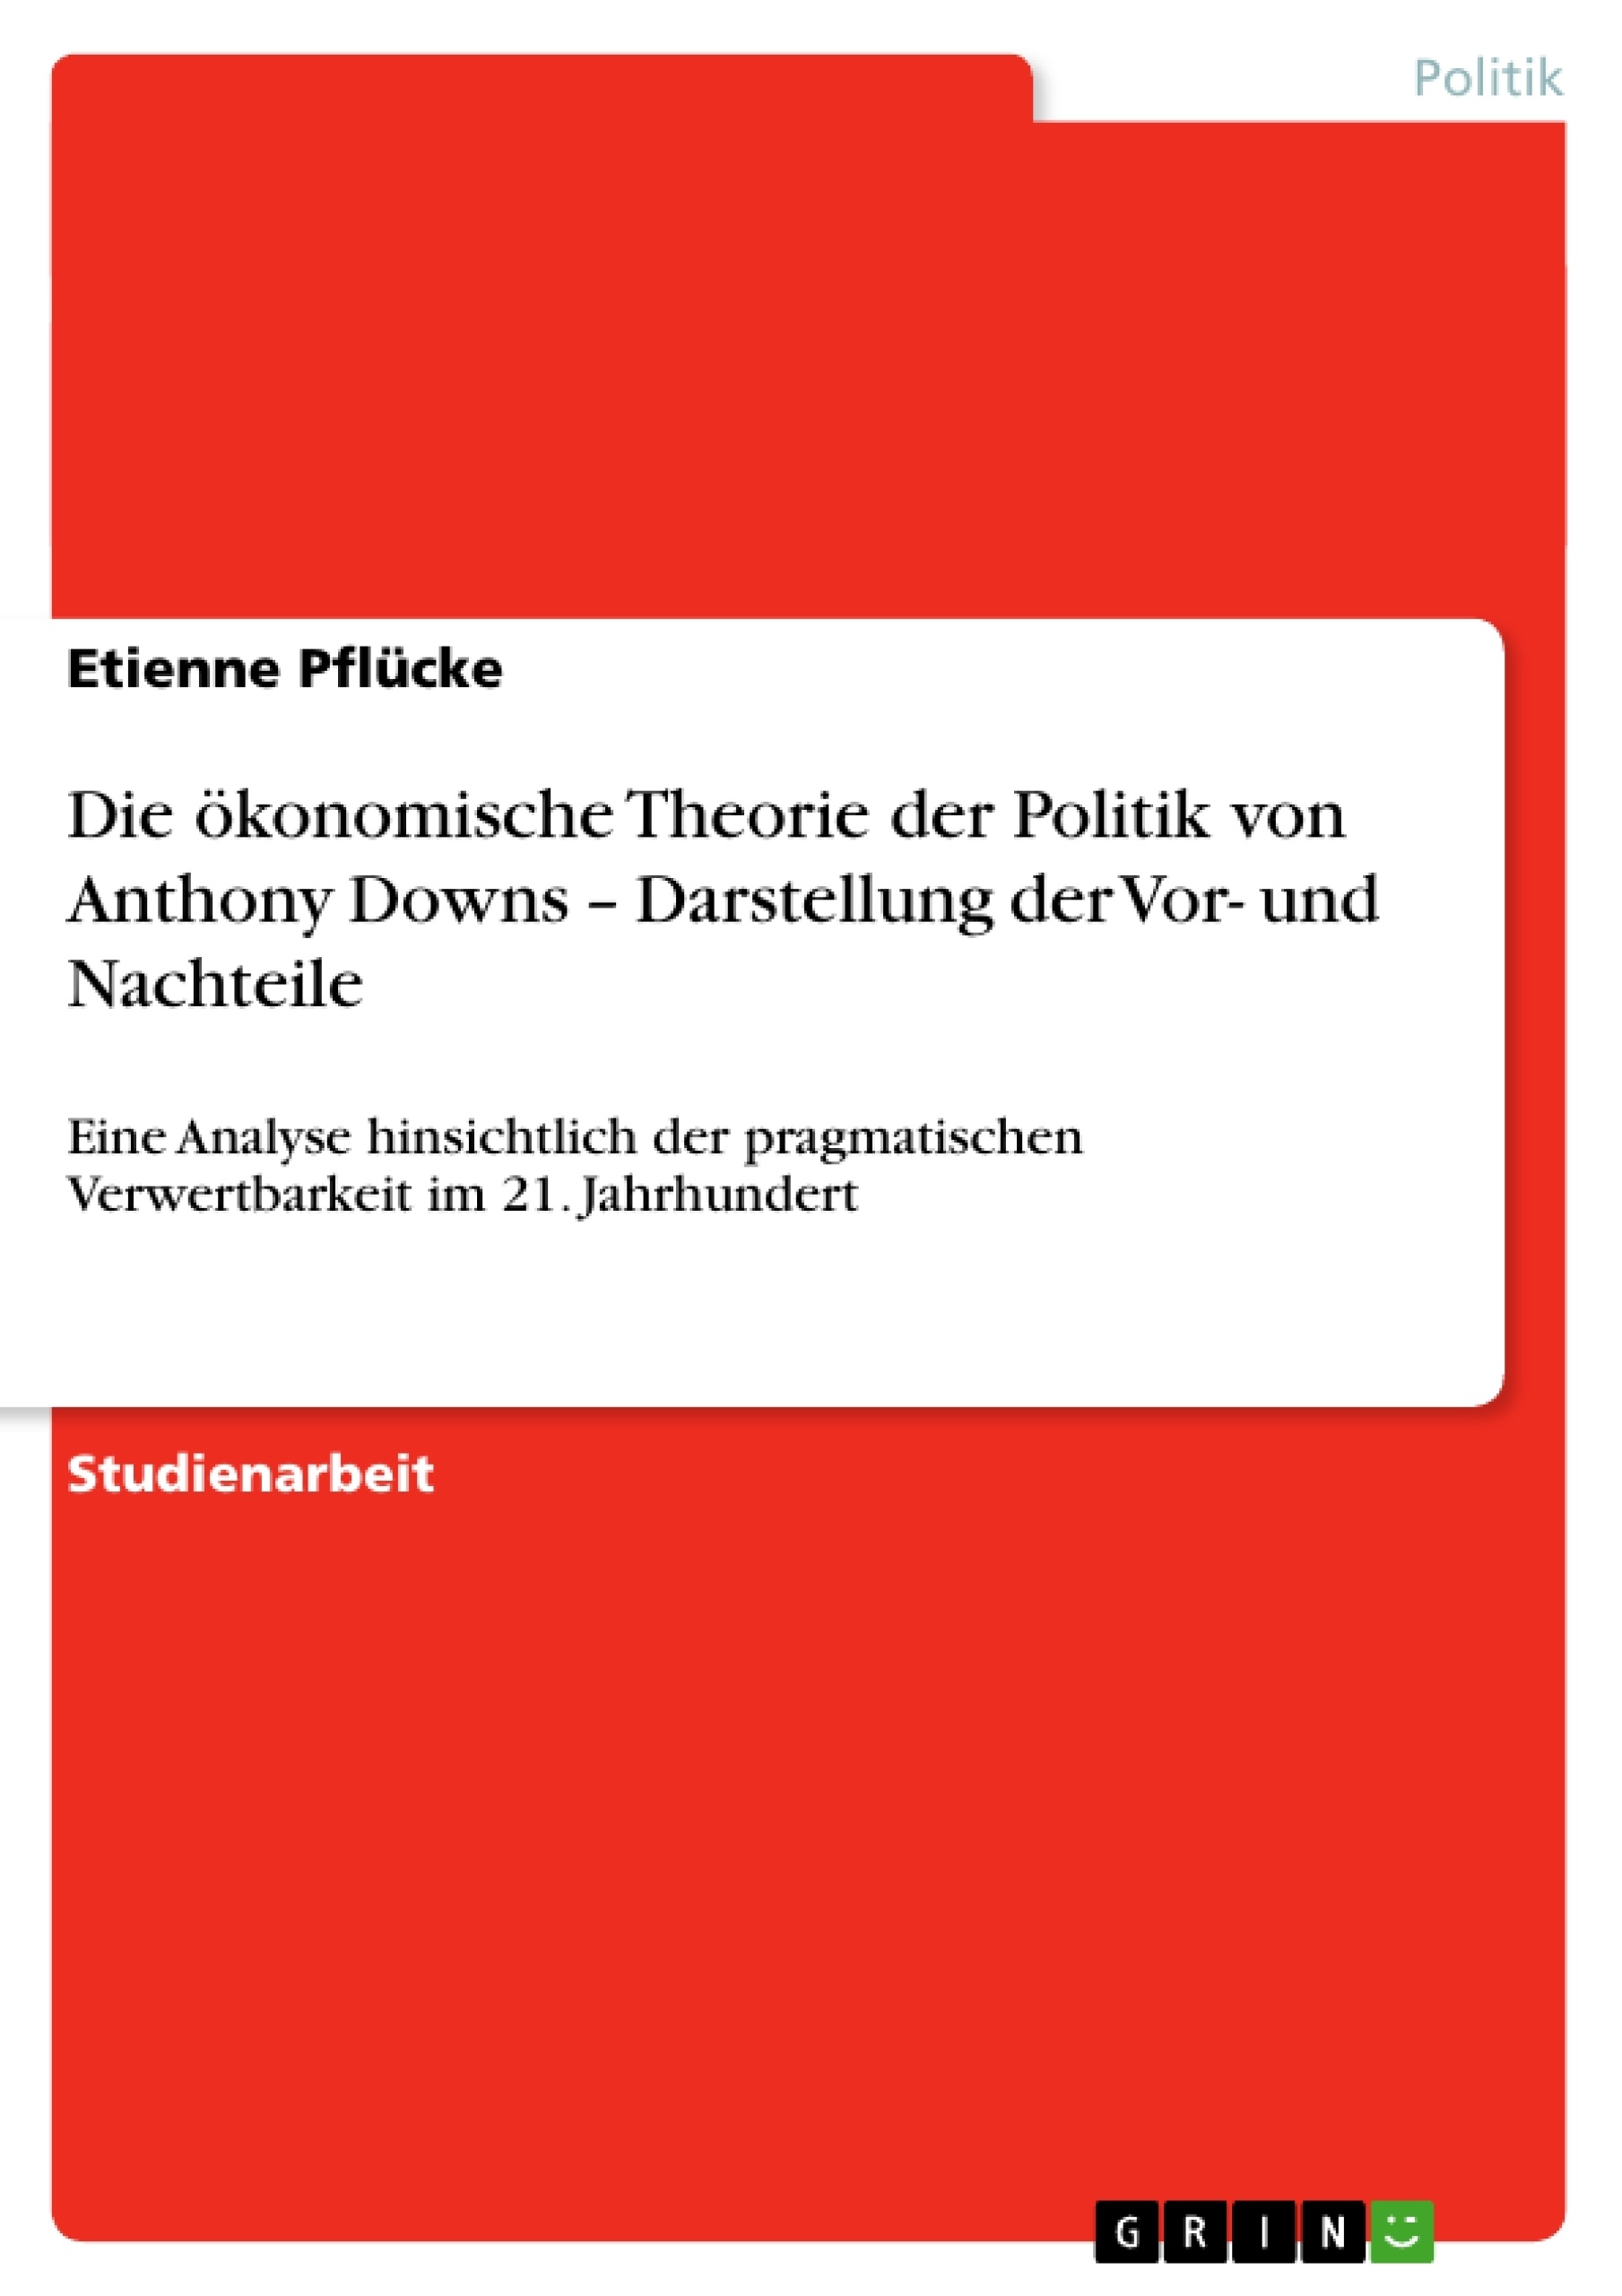 Título: Die ökonomische Theorie der Politik von Anthony Downs – Darstellung der Vor- und Nachteile